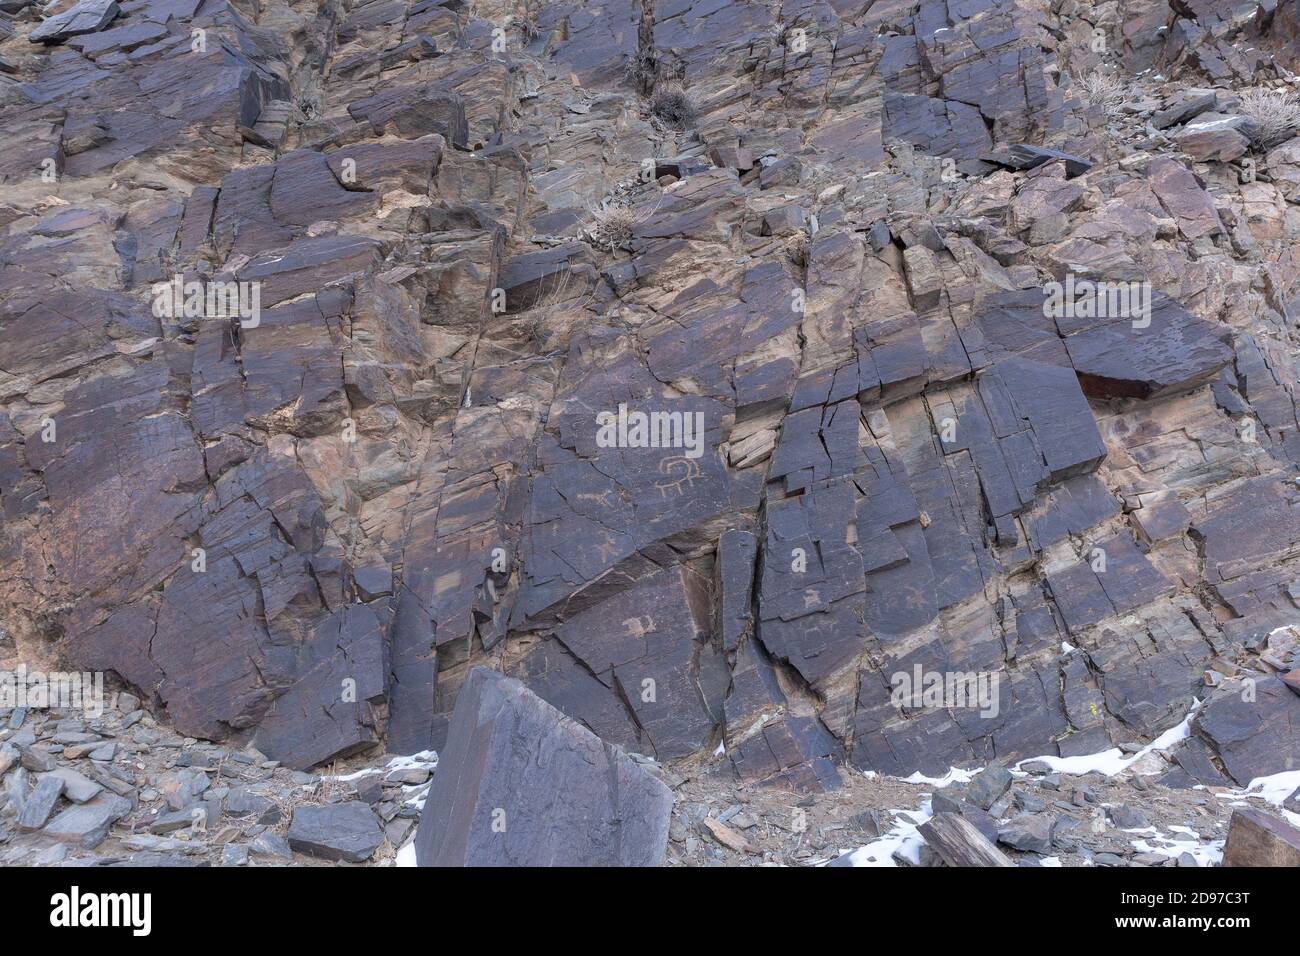 Vallée de sculptures de roche, rochers avec sculptures de roche, datant de - 8000 et - 3000 ans, montagnes Altai, Mongolie-Ouest, Mongolie Banque D'Images